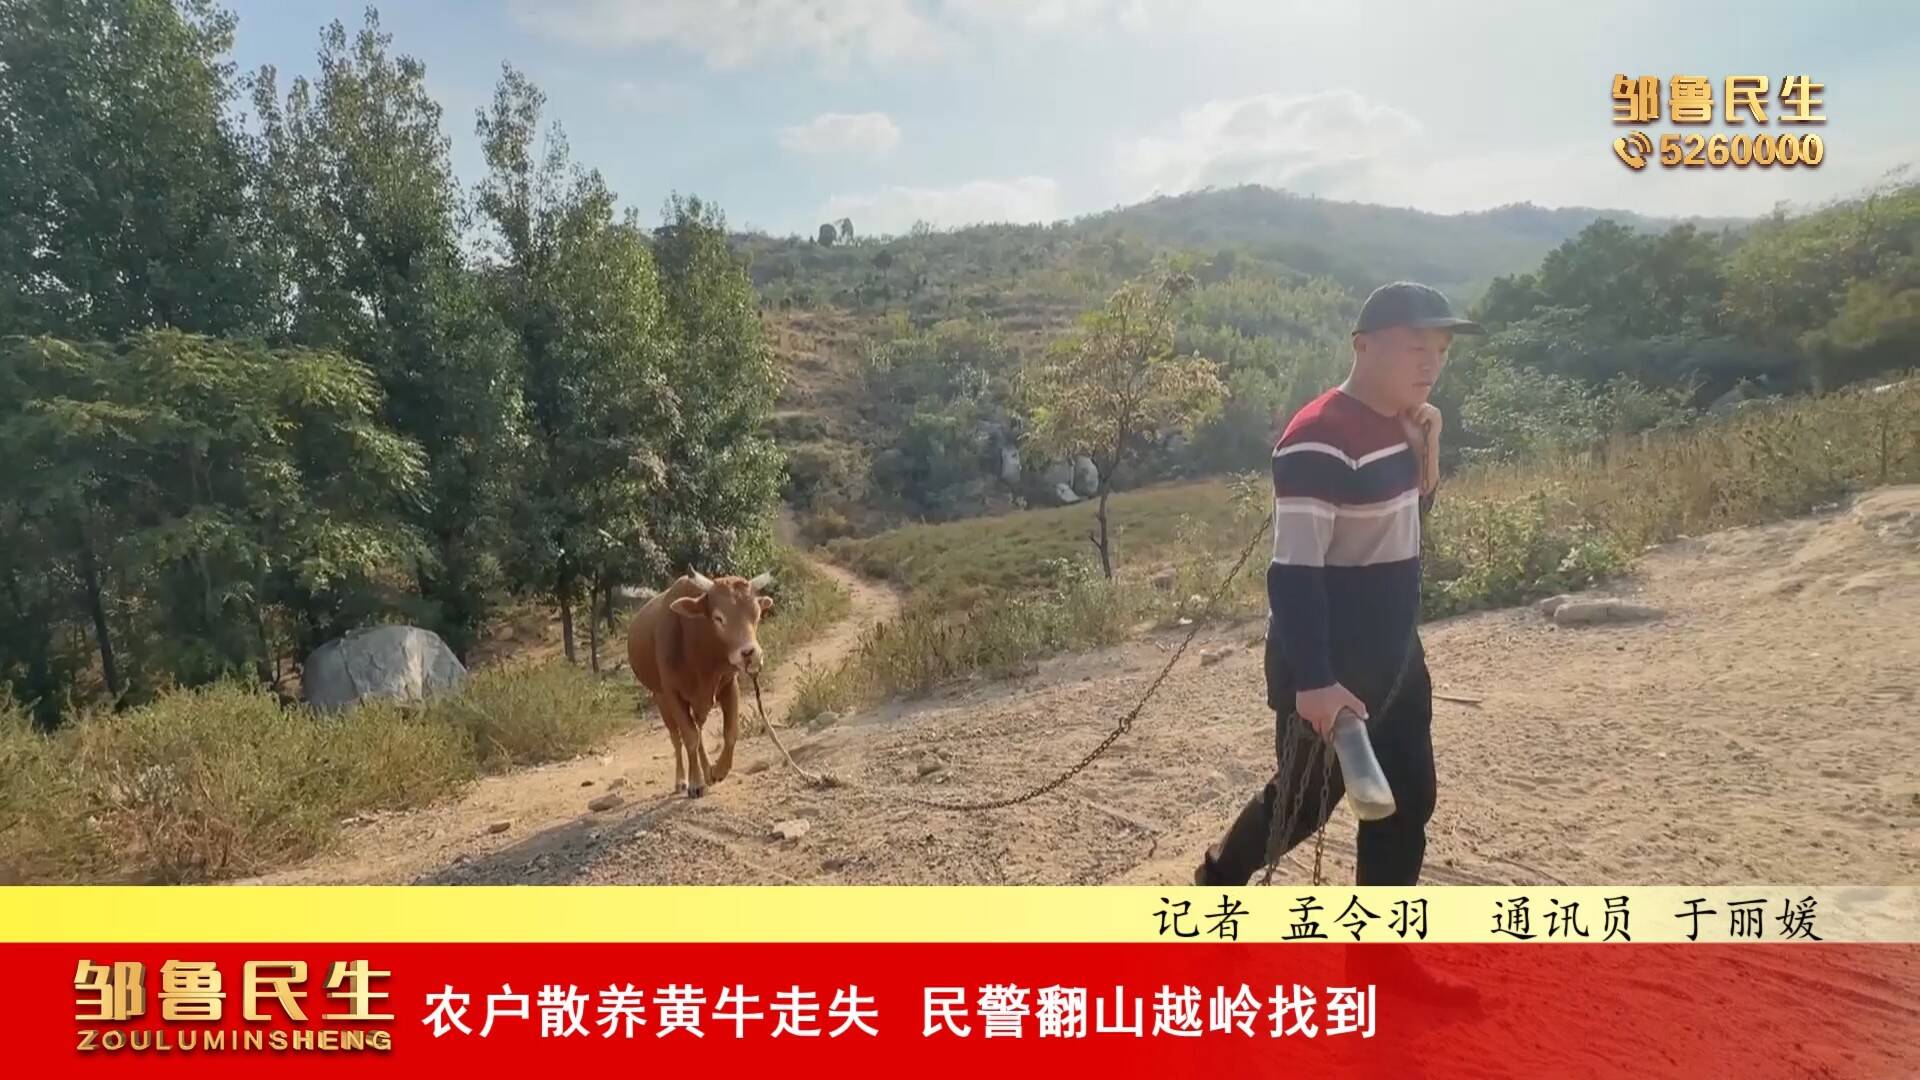 【视频新闻】农户散养黄牛走失  民警翻山越岭找到